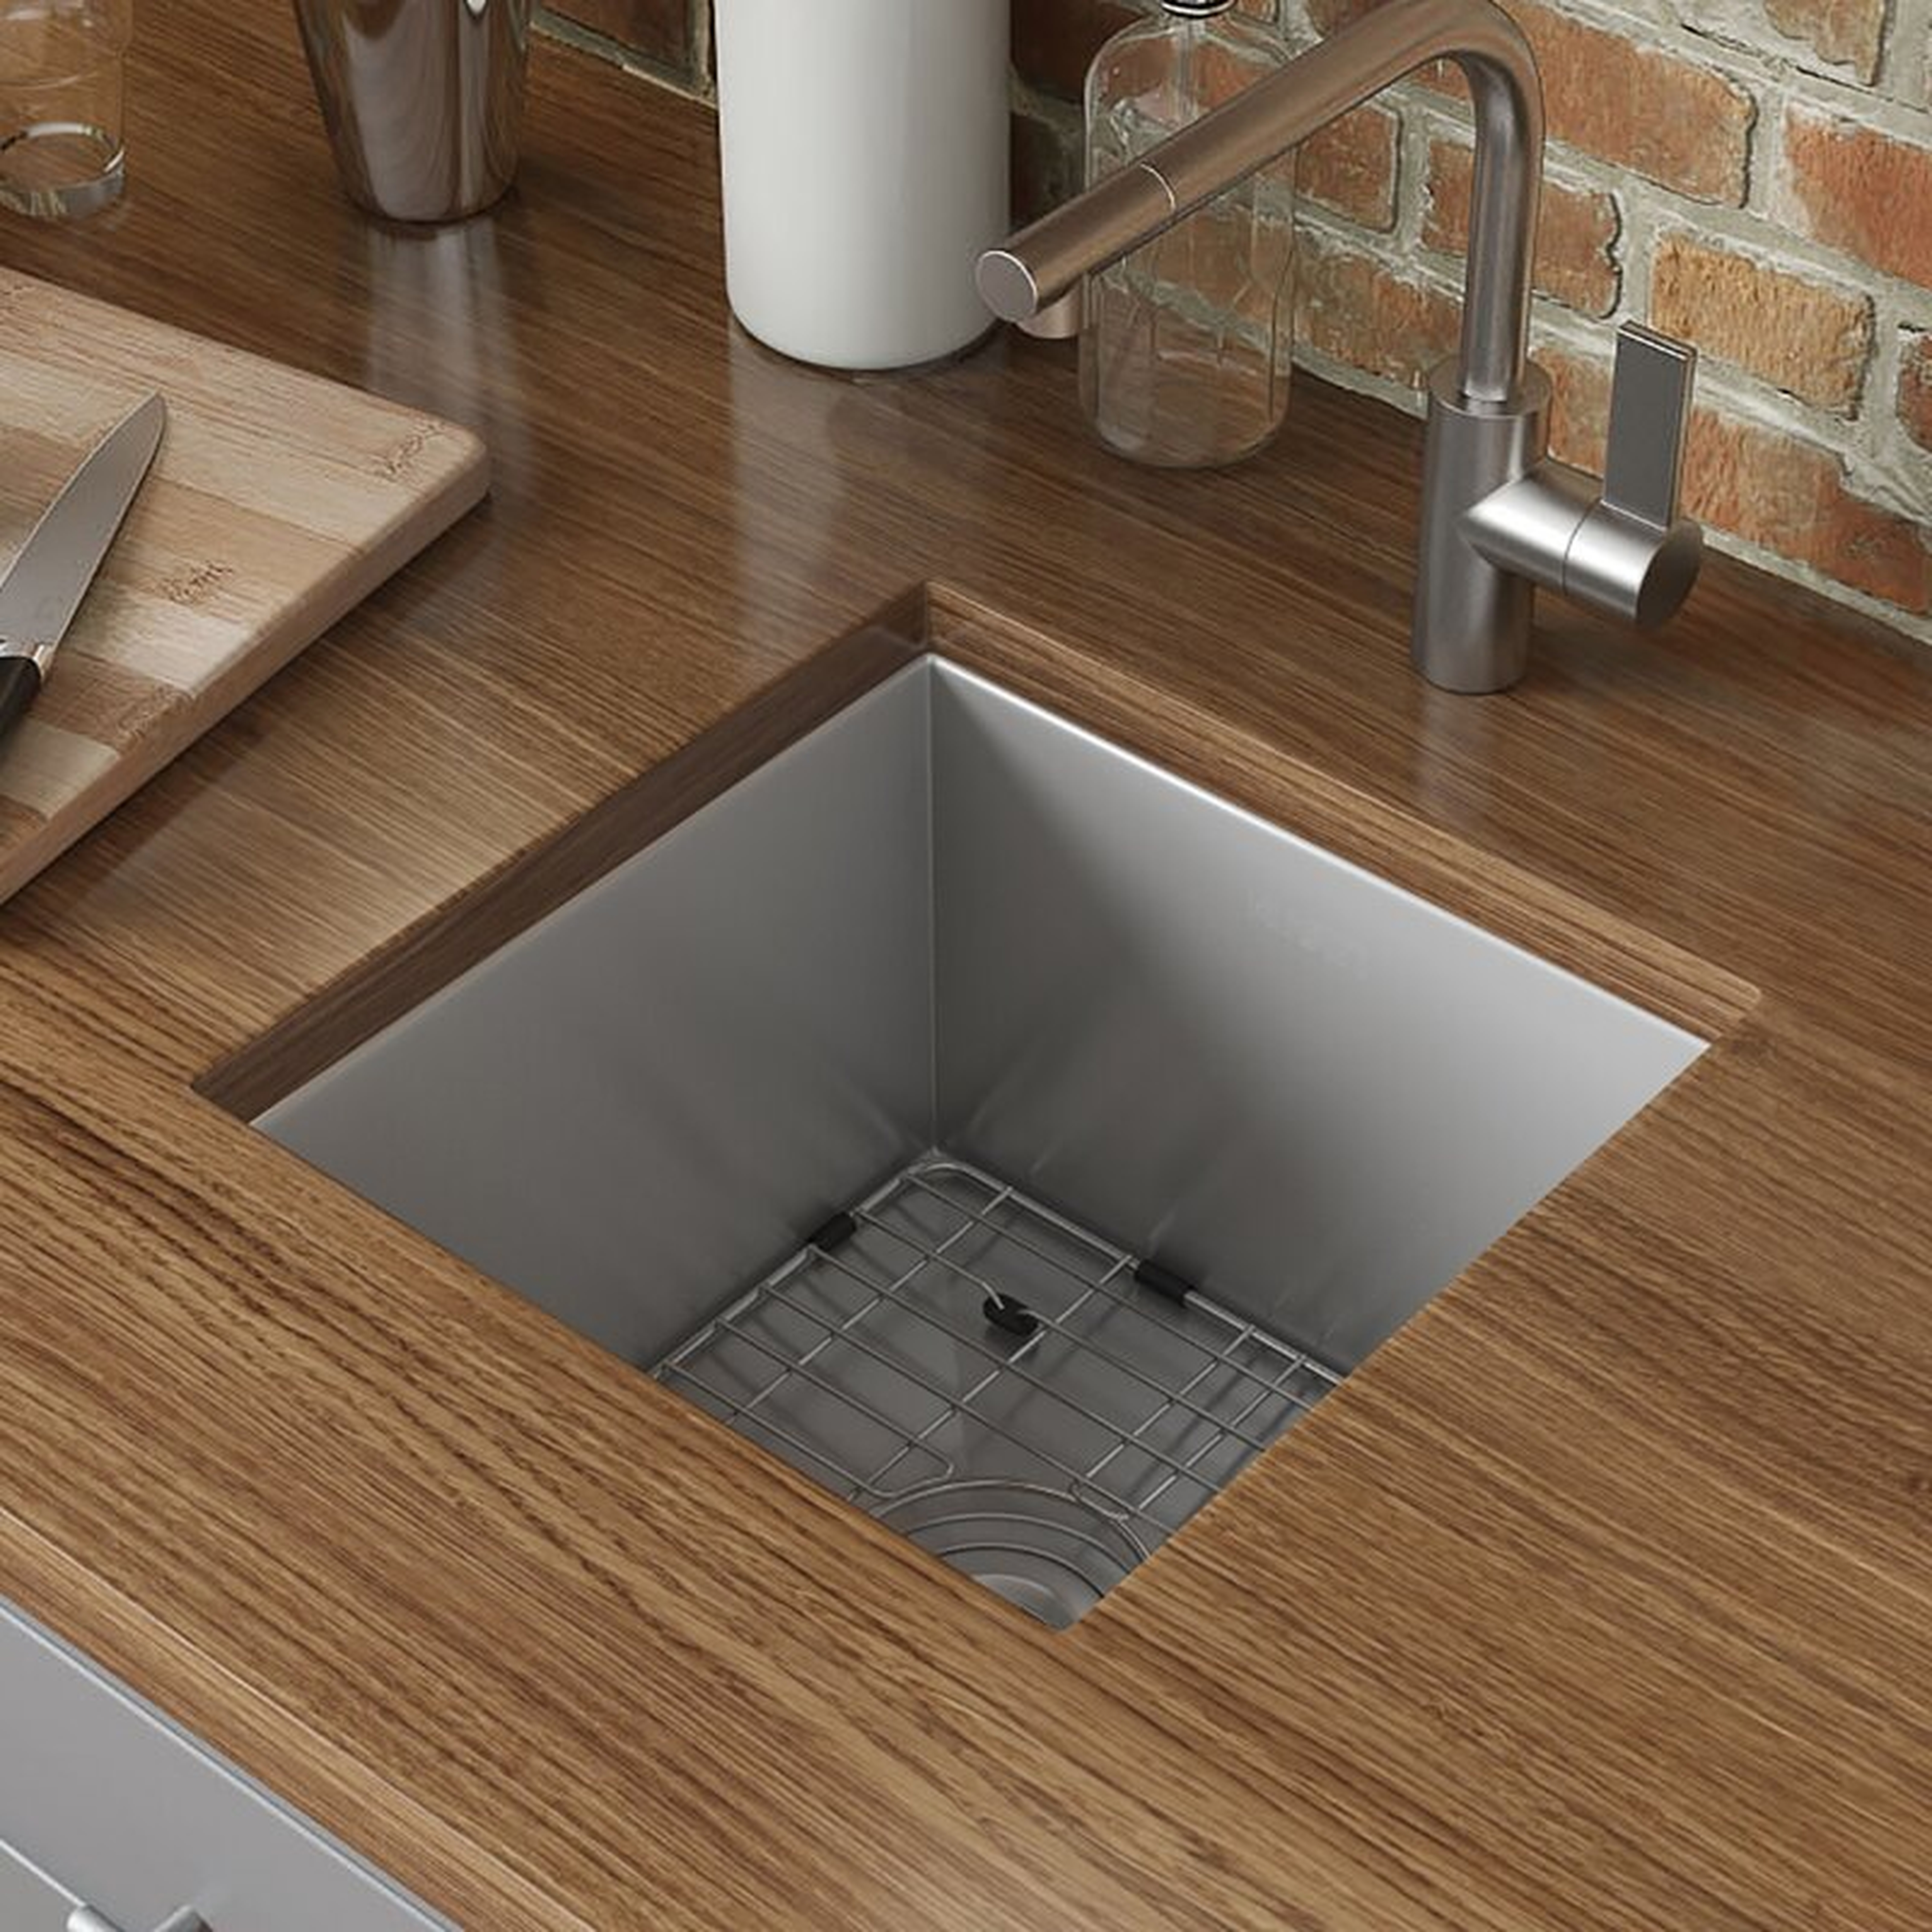 RVH7115 Nesta 15" L x 15" W Undermount Kitchen Sink with Basket Strainer - Wayfair